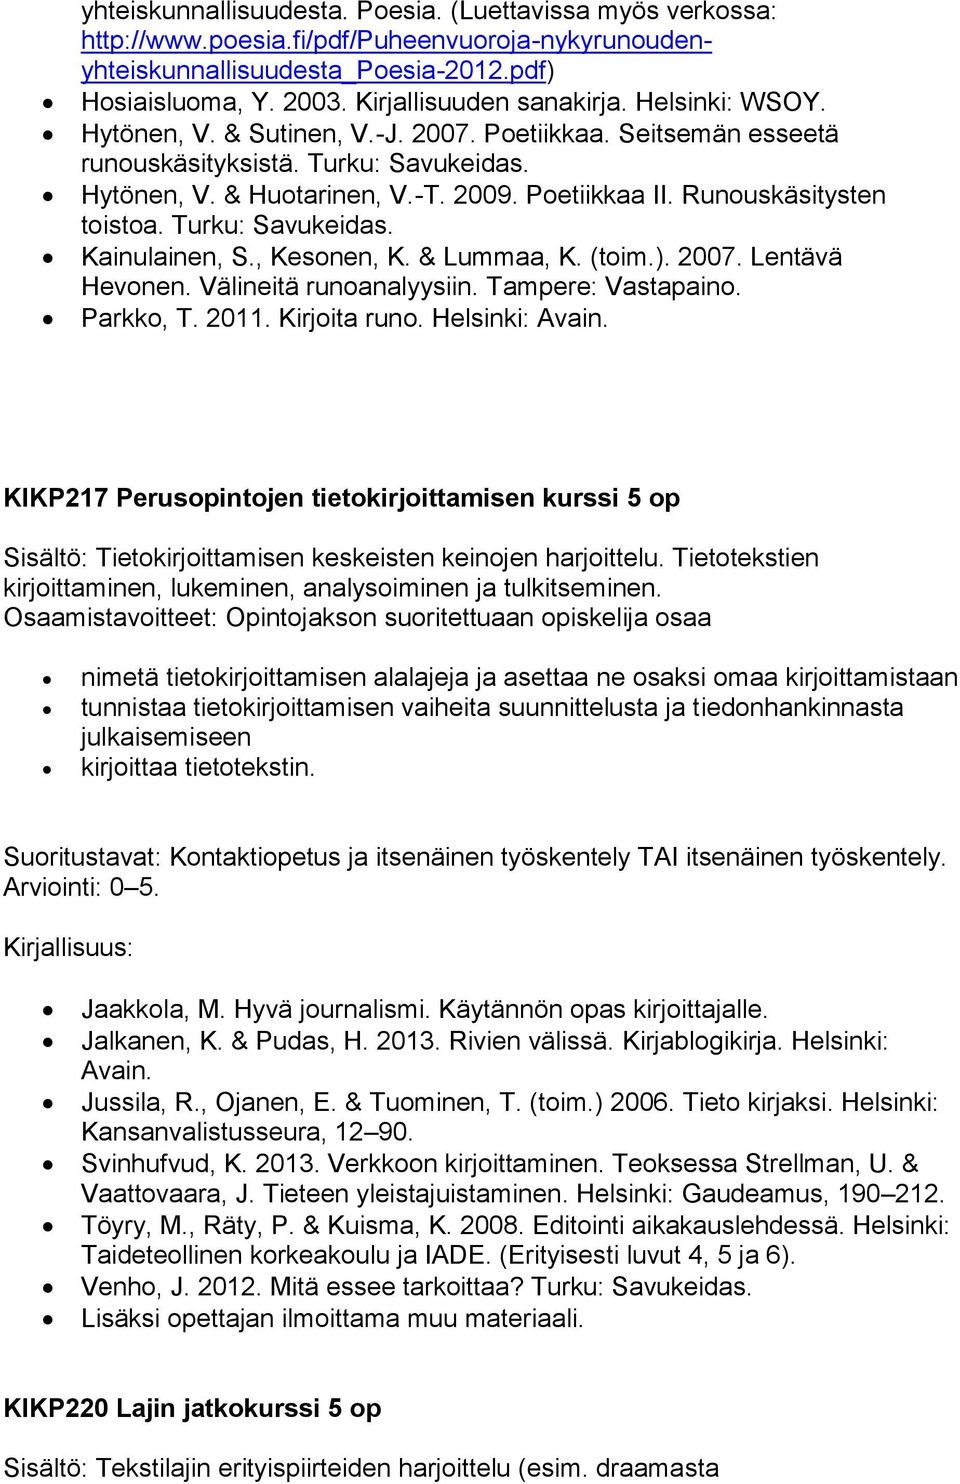 Turku: Savukeidas. Kainulainen, S., Kesonen, K. & Lummaa, K. (toim.). 2007. Lentävä Hevonen. Välineitä runoanalyysiin. Tampere: Vastapaino. Parkko, T. 2011. Kirjoita runo. Helsinki: Avain.